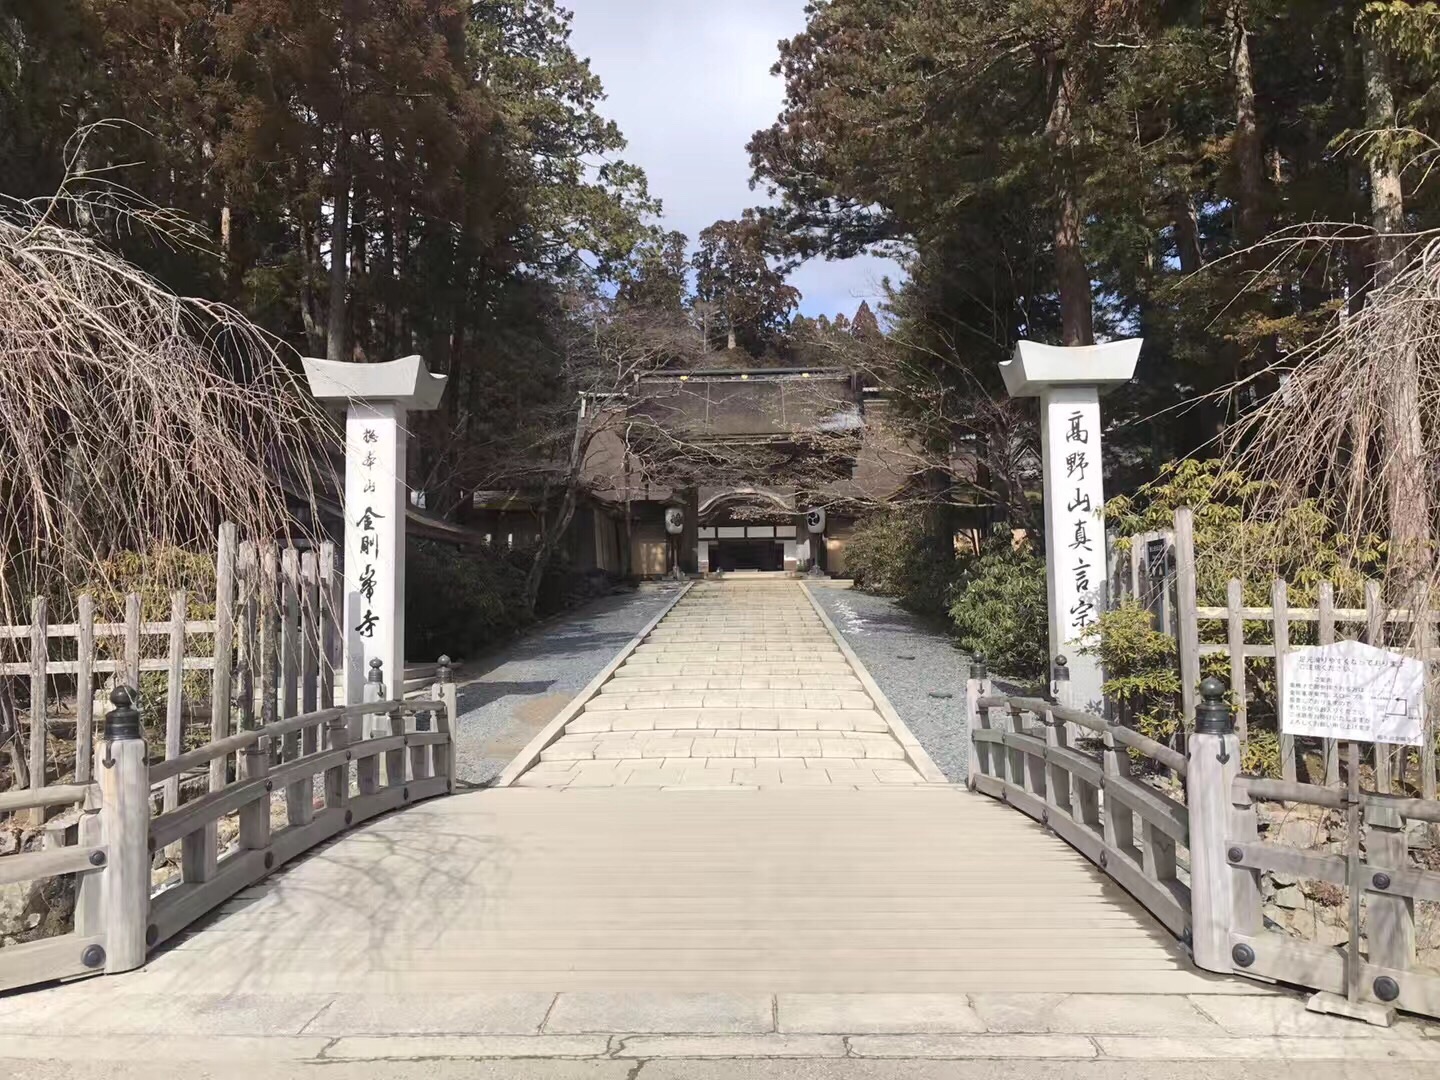 【携程攻略】高野町金刚峰寺景点,他是日本古义真言宗的总本山 位于高野山上 是一个新的网红之地 它与…